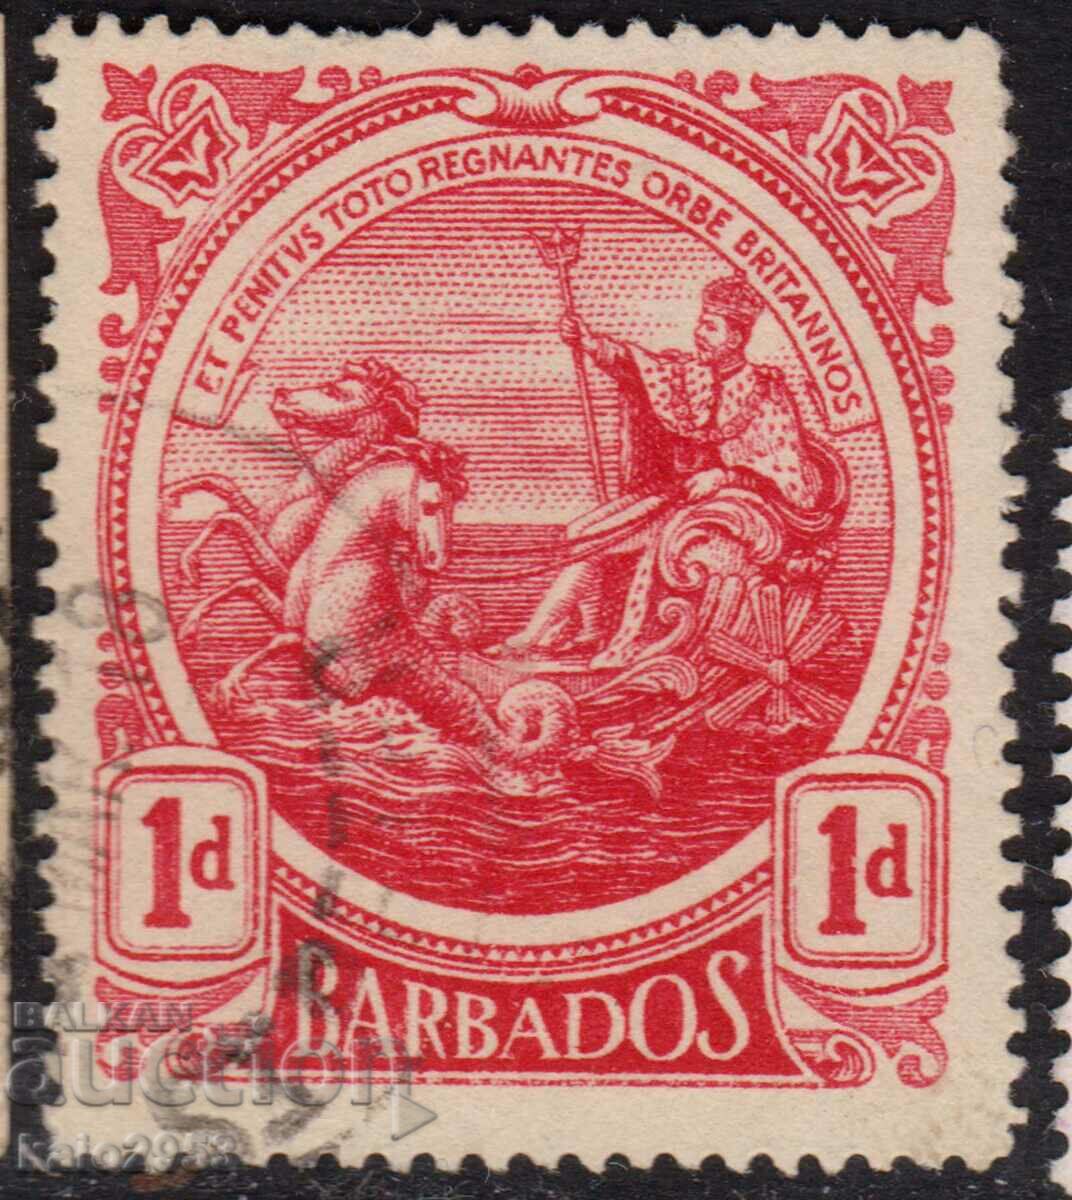 GB/Barbados-1916-Държ. Печат на колонията-"Британия",клеймо